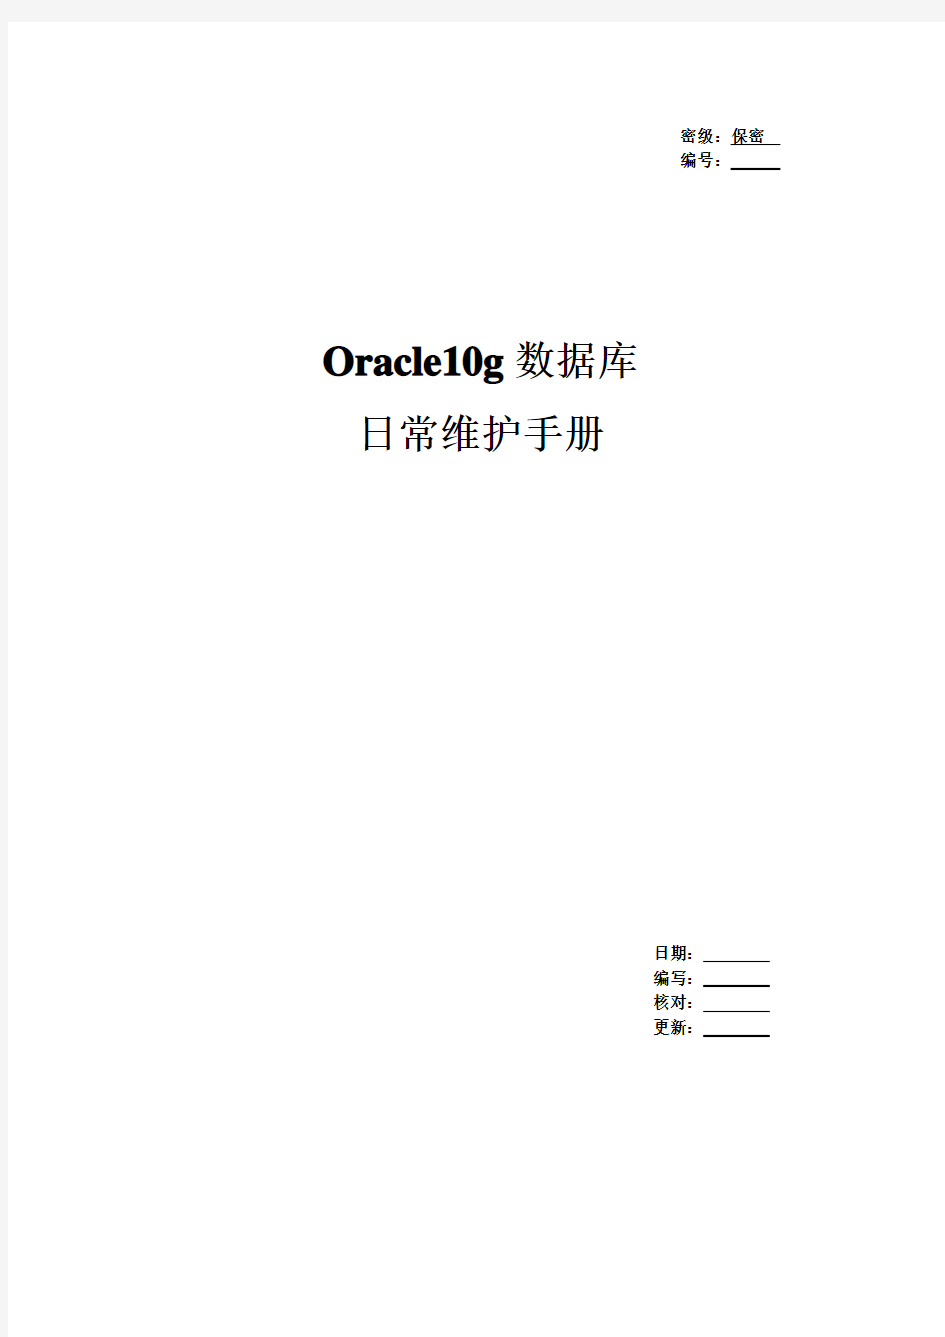 Oracle数据库日常维护手册